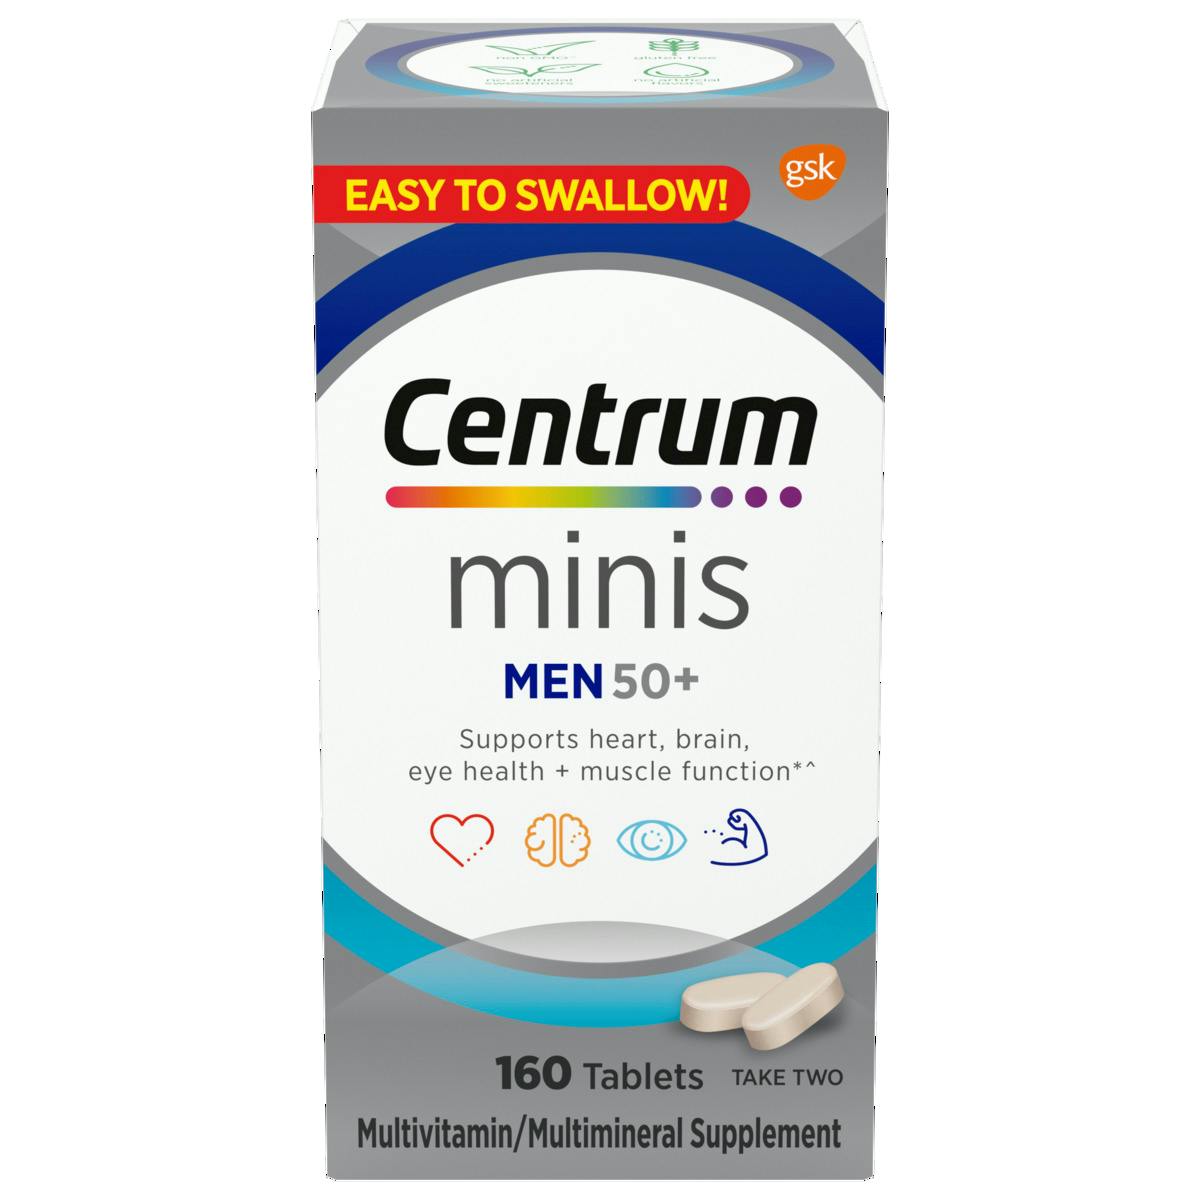 Bottle of Centrum Minis Men 50plus multivitamins